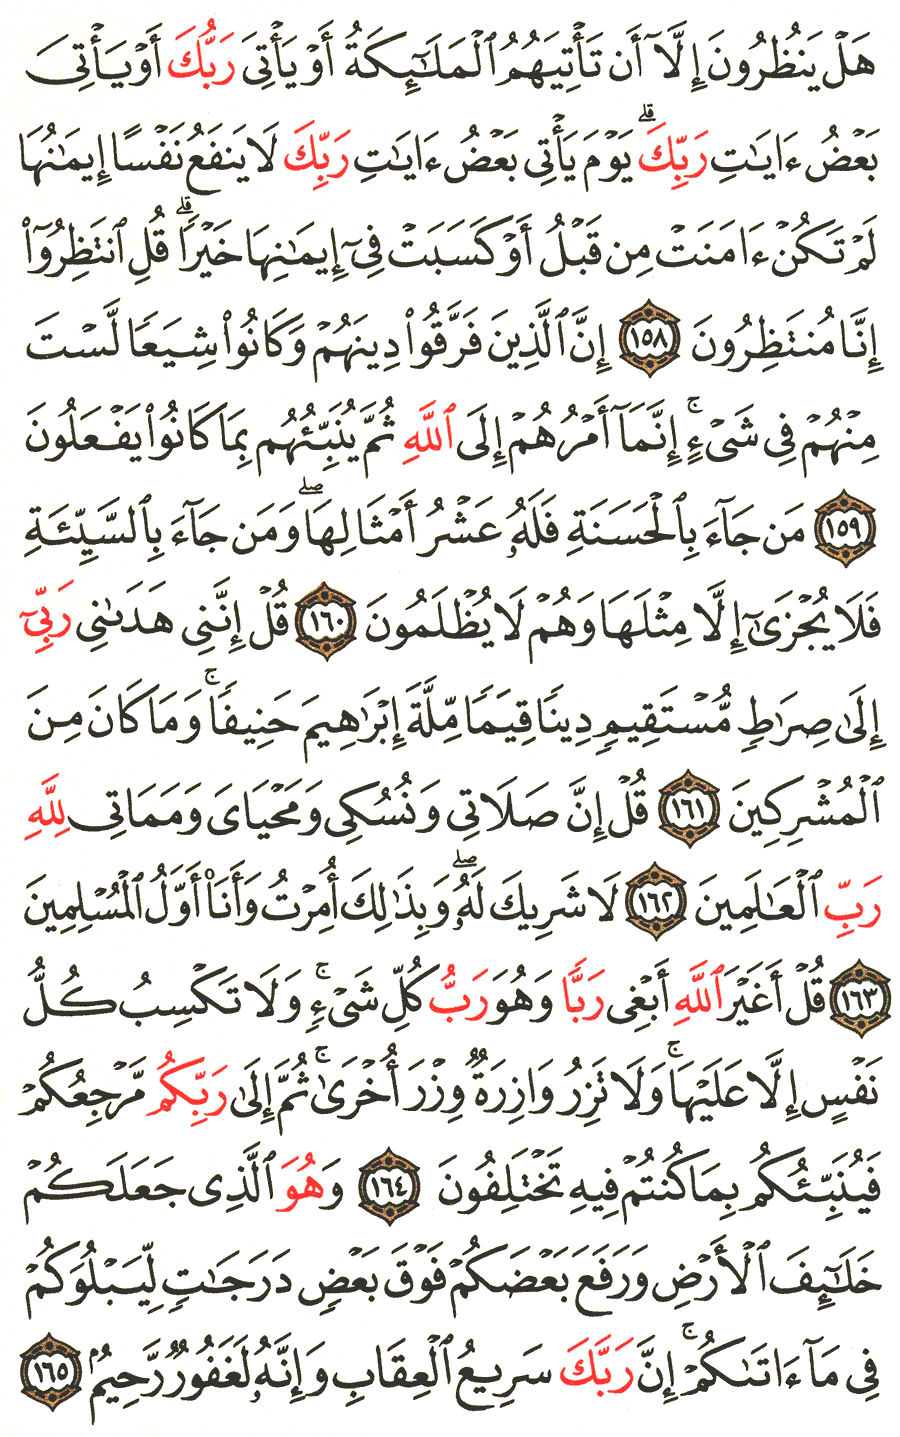 الصفحة رقم 150 من القرآن الكريم مكتوبة من المصحف